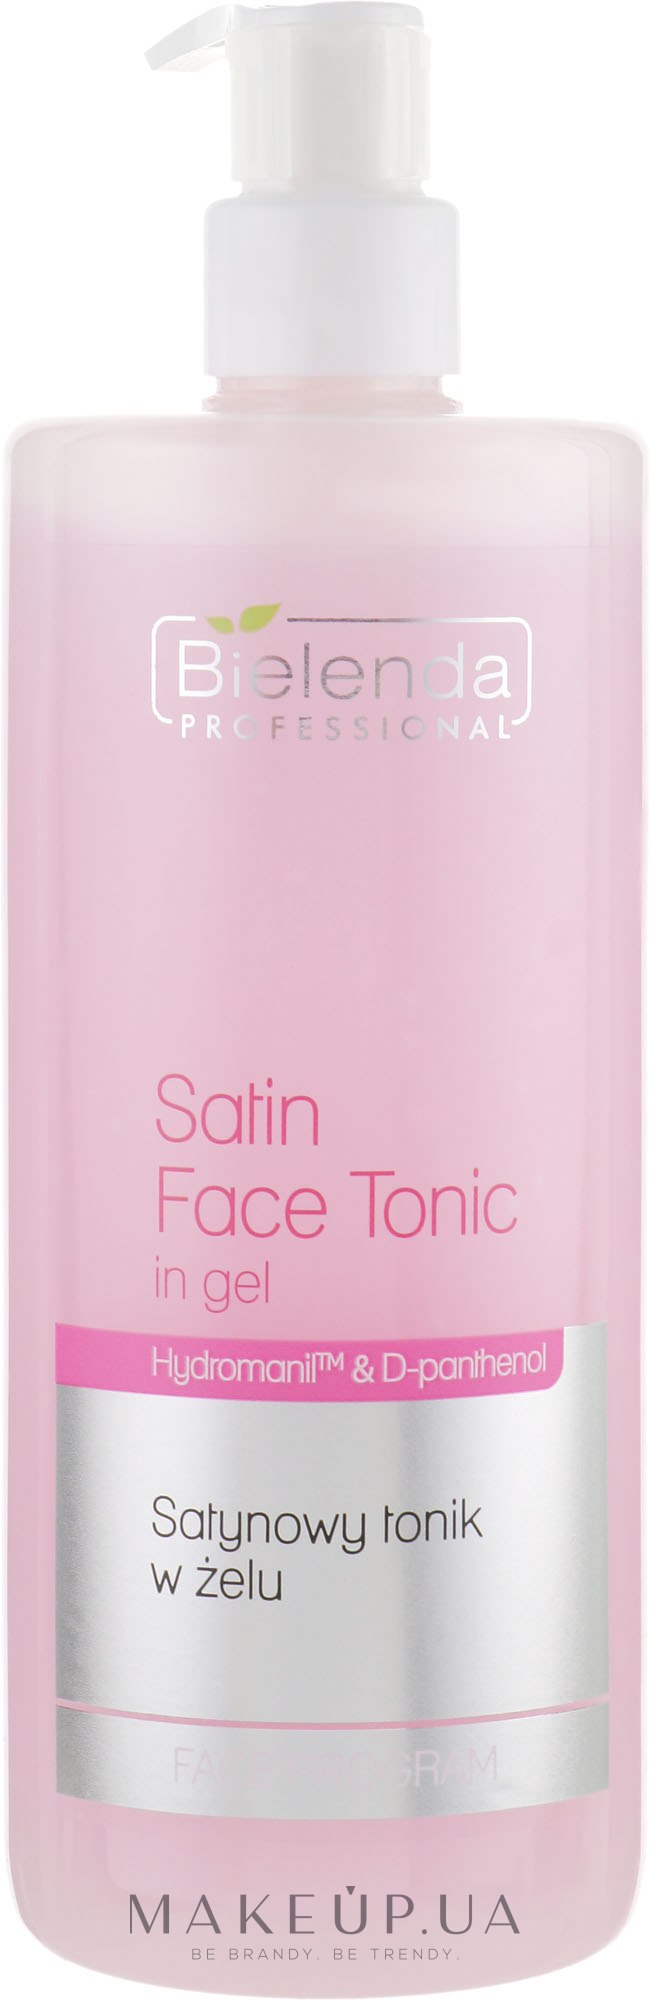 Сатиновий гель-тонік для обличчя - Bielenda Professional Program Face Skin Satin Tonik — фото 500ml